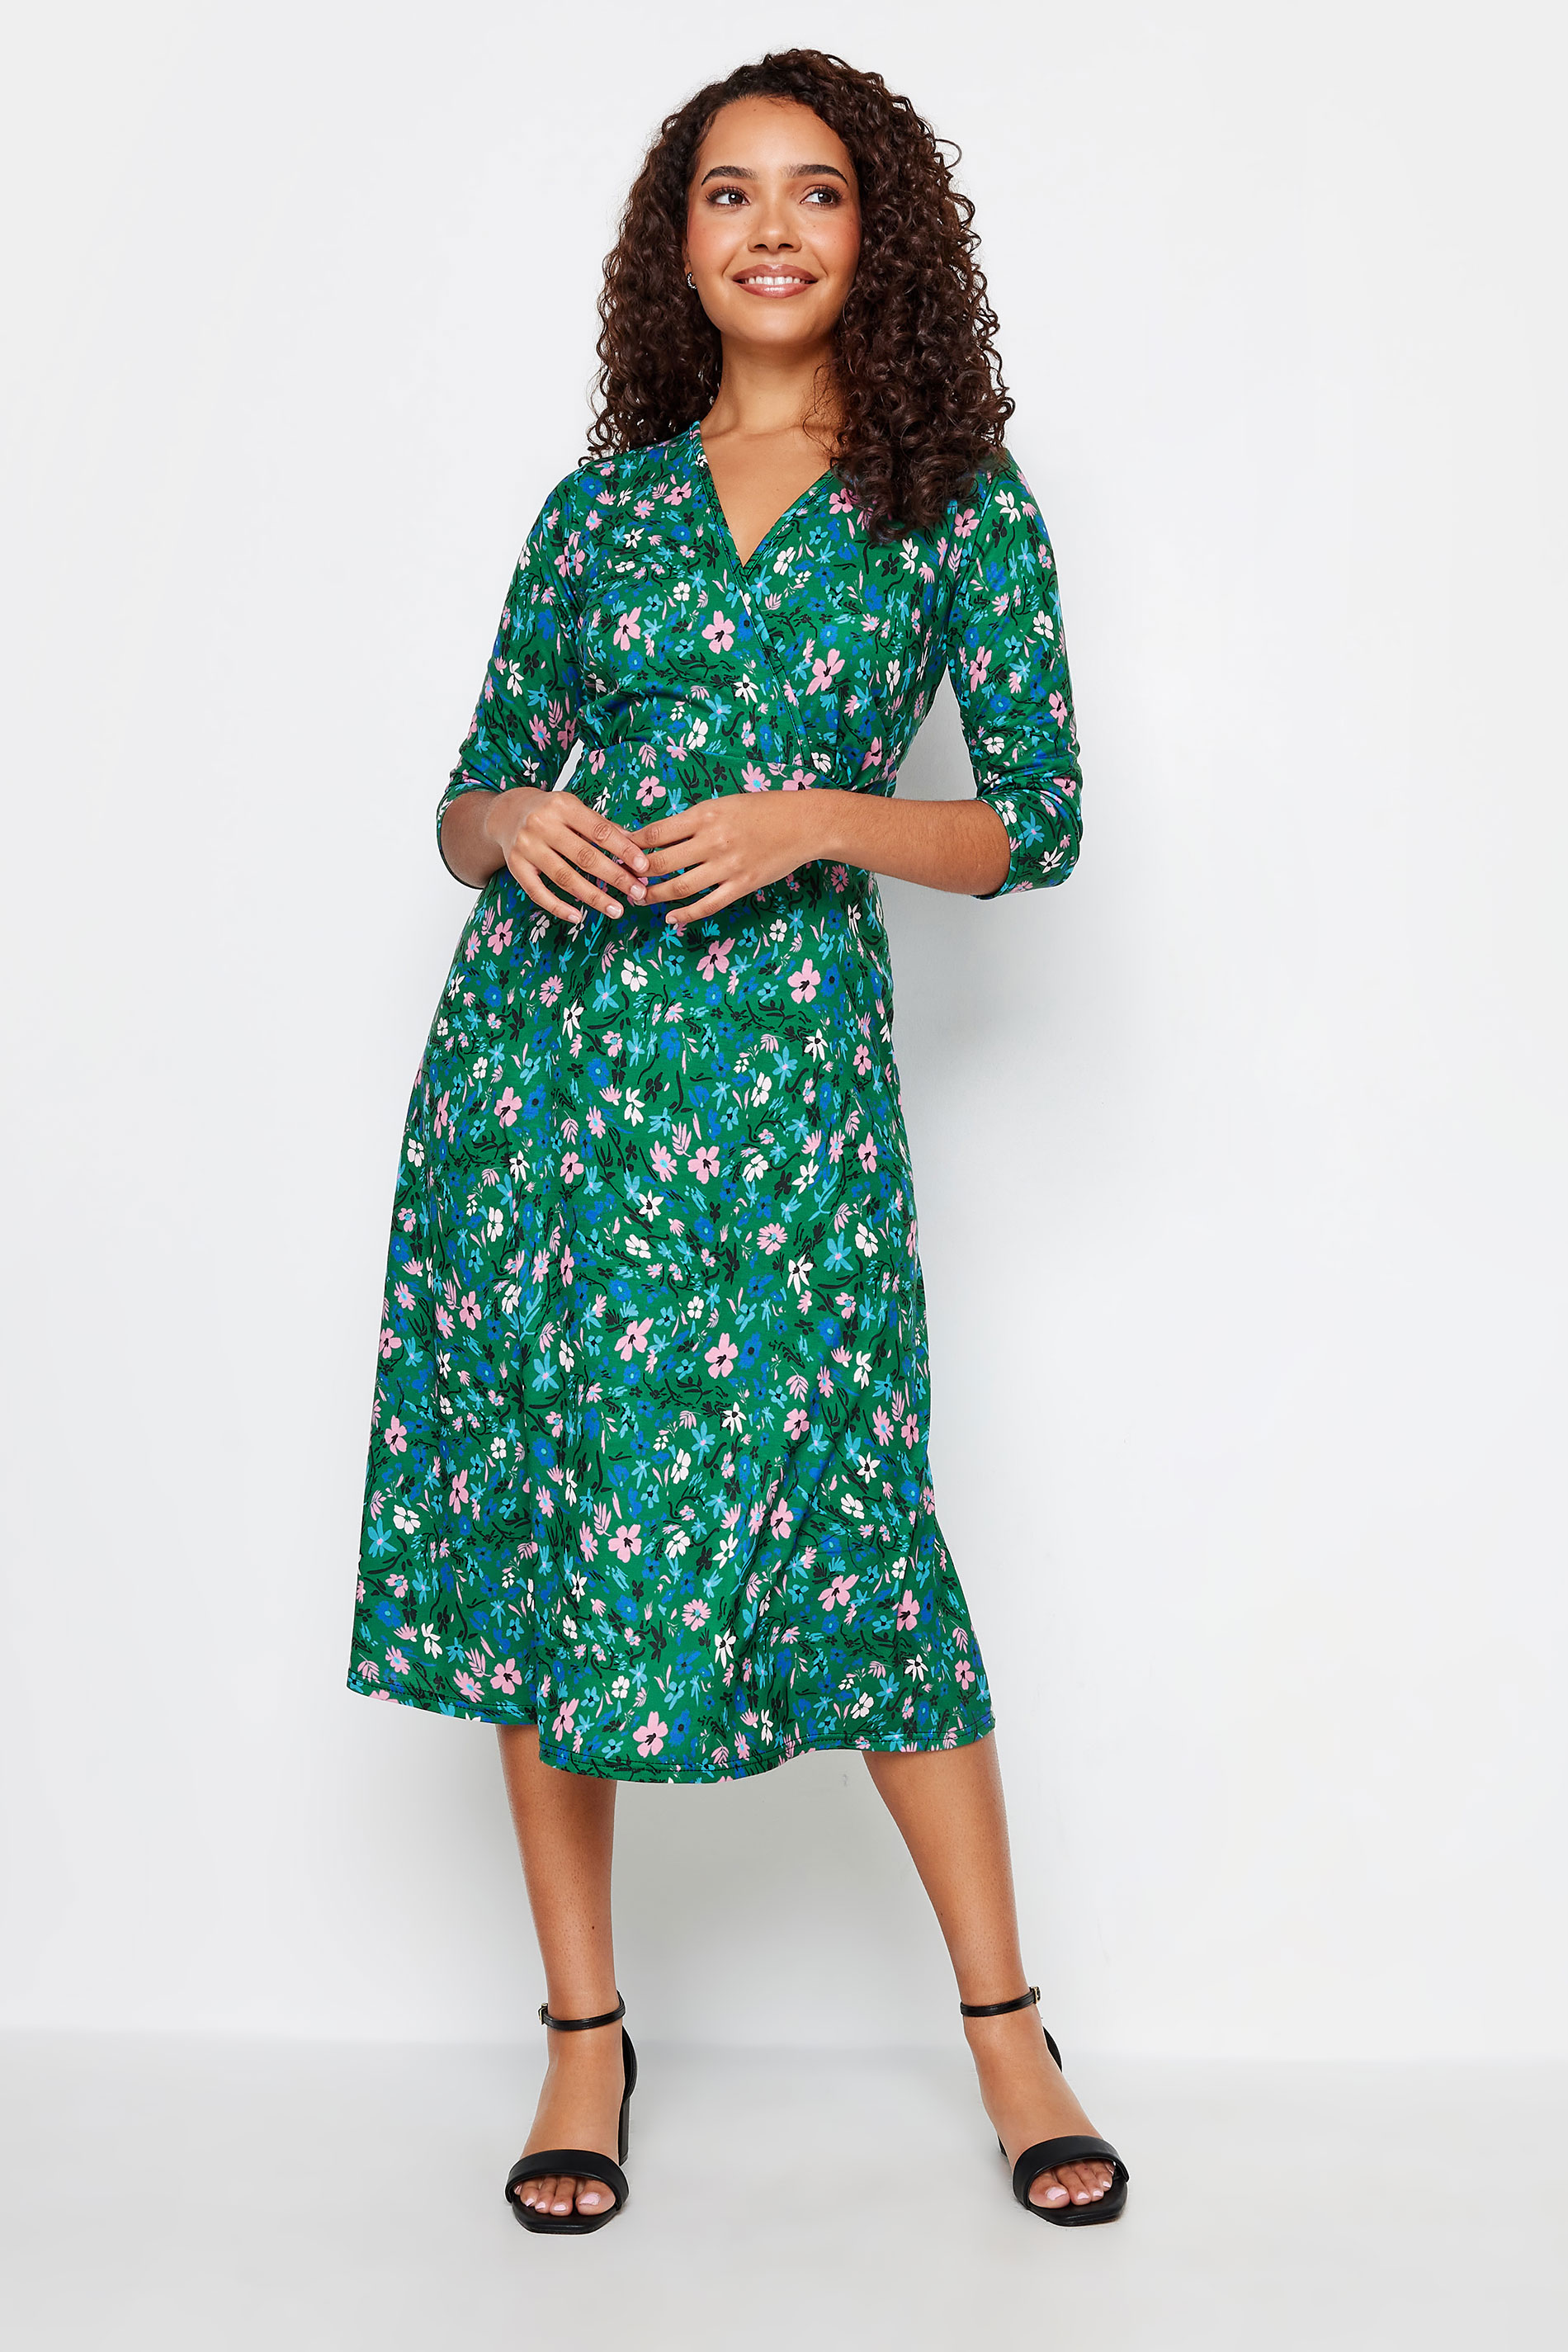 M&Co Green Floral Print Wrap Dress | M&Co  2